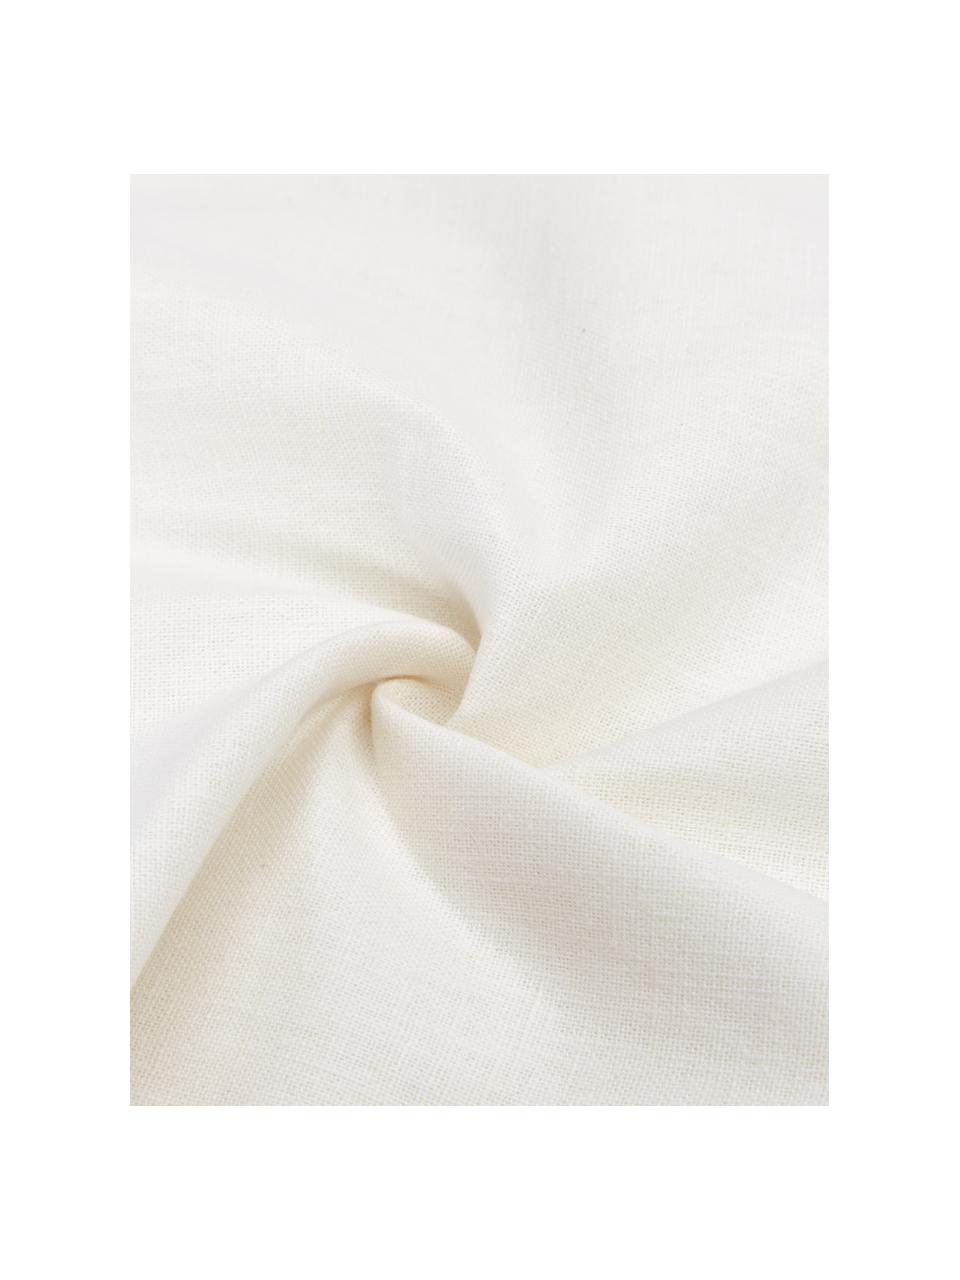 Leinen-Kissenhülle Malia in Weiß mit Strukturmuster, 51 % Leinen, 49 % Baumwolle, Weiß, B 45 x L 45 cm